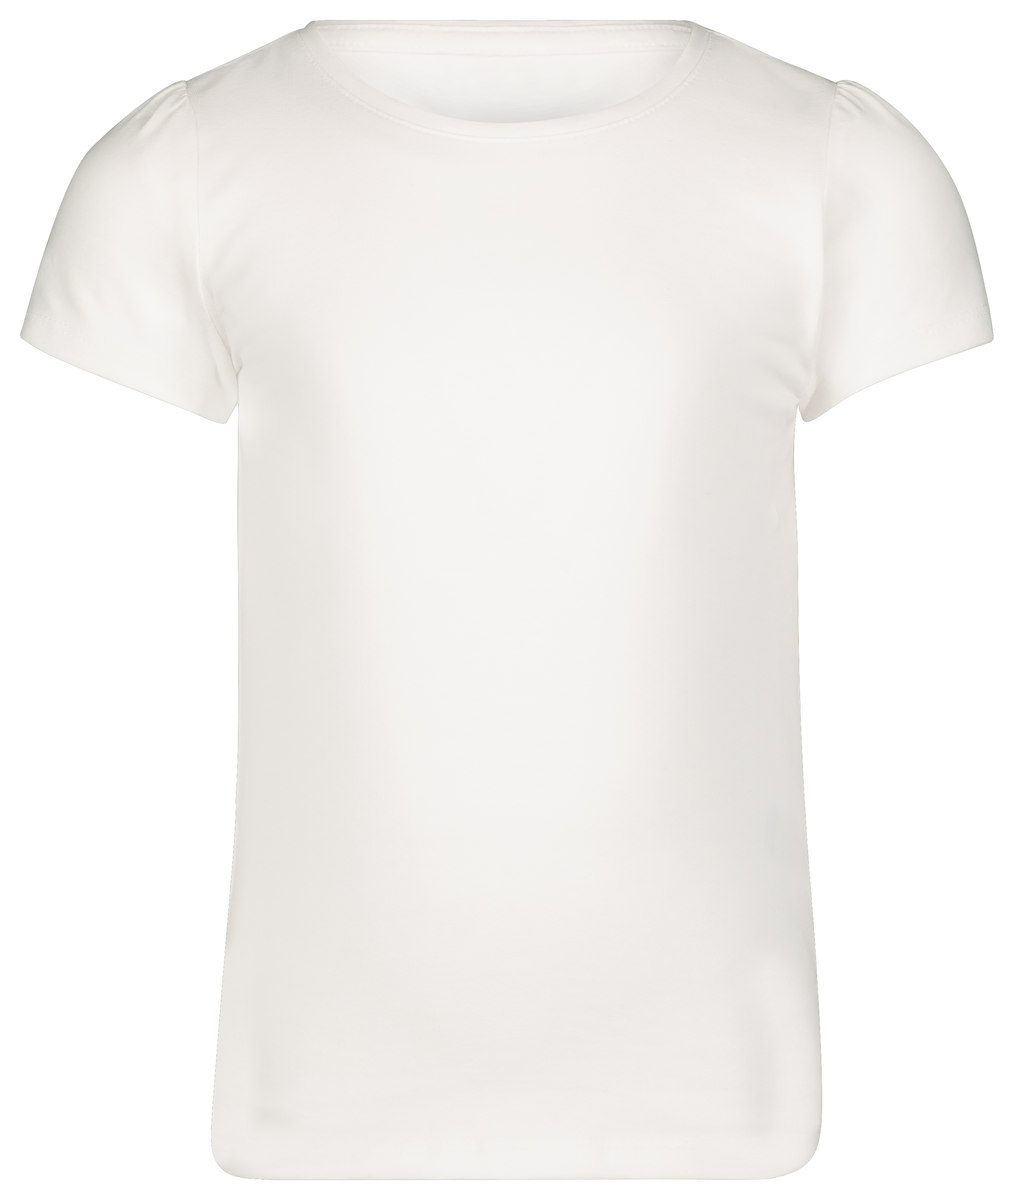 2er-Pack Kinder-T-Shirts weiß weiß - 1000013798 - HEMA